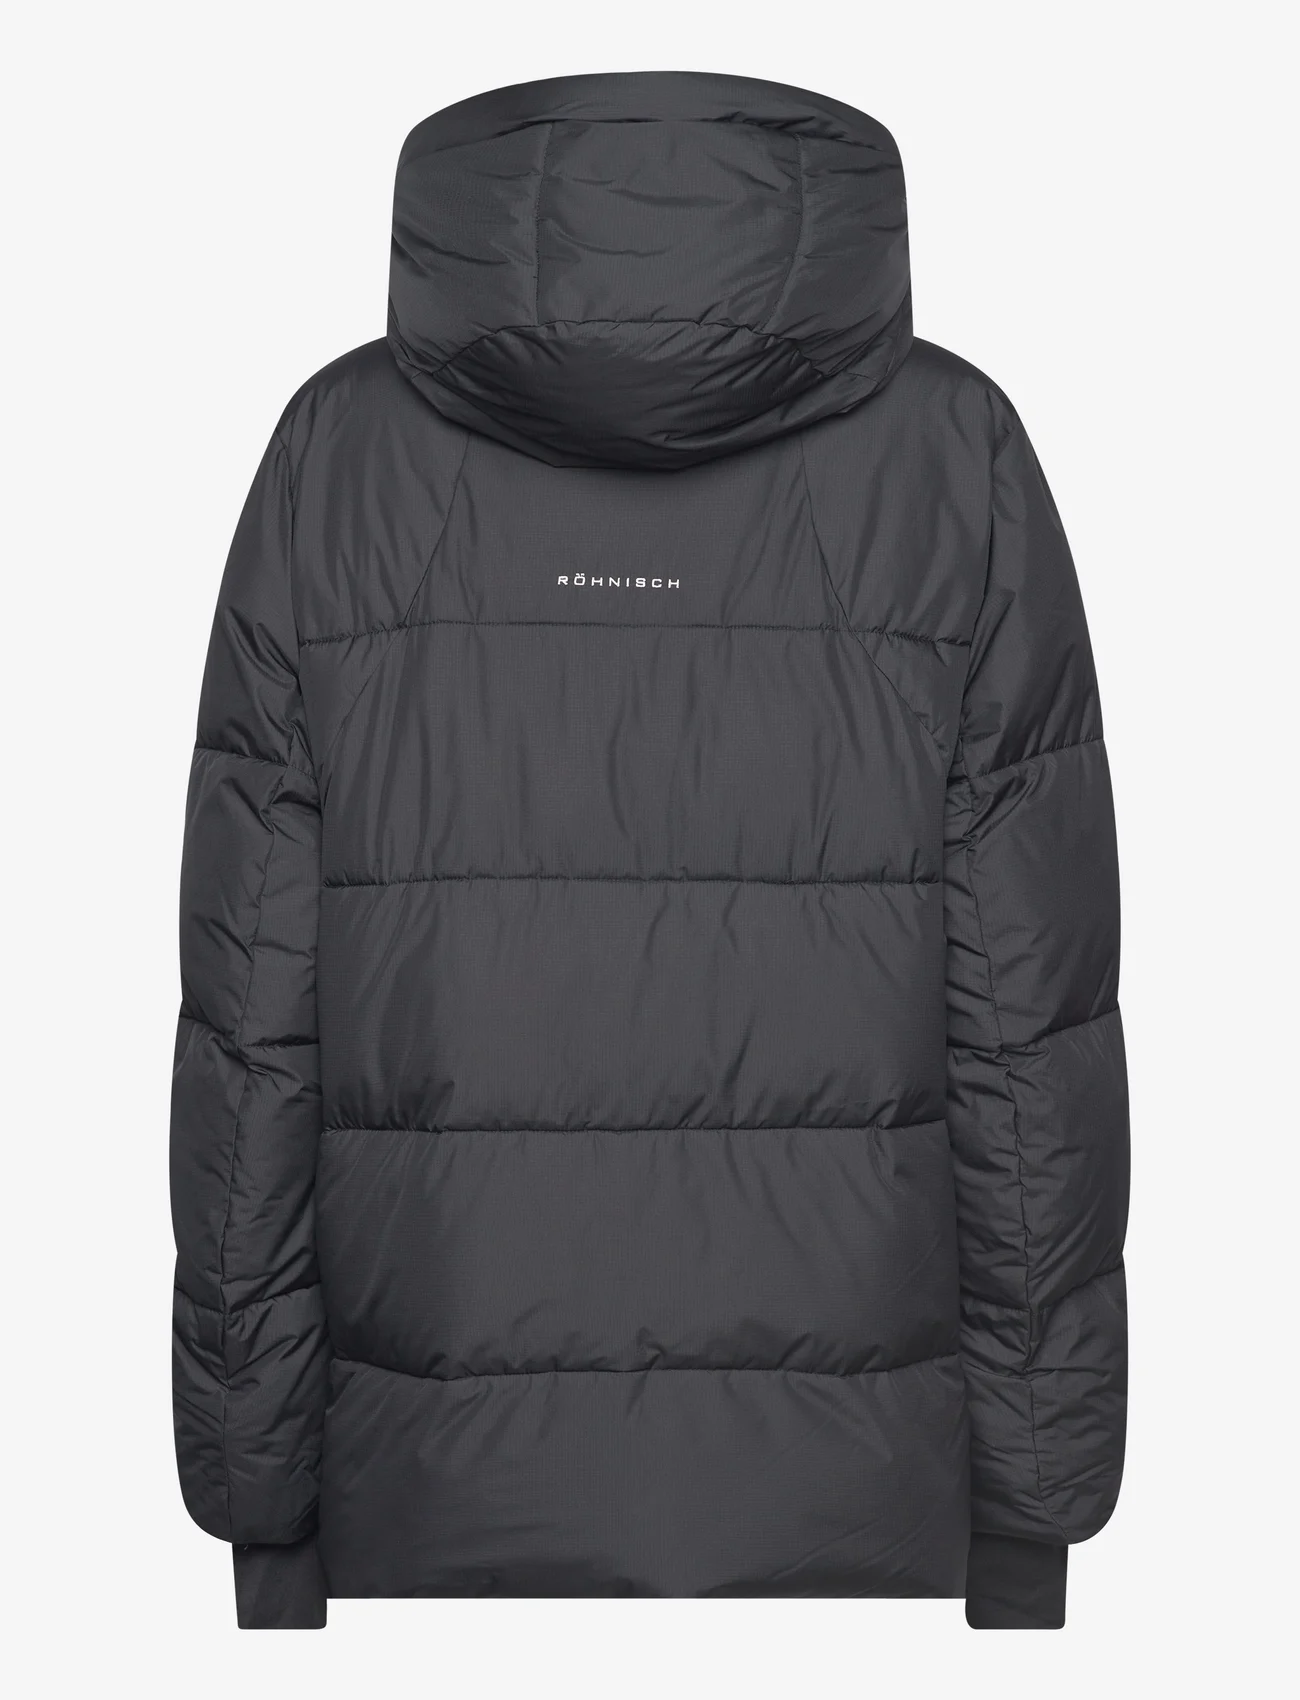 Röhnisch - Suri Jacket - down- & padded jackets - black - 1